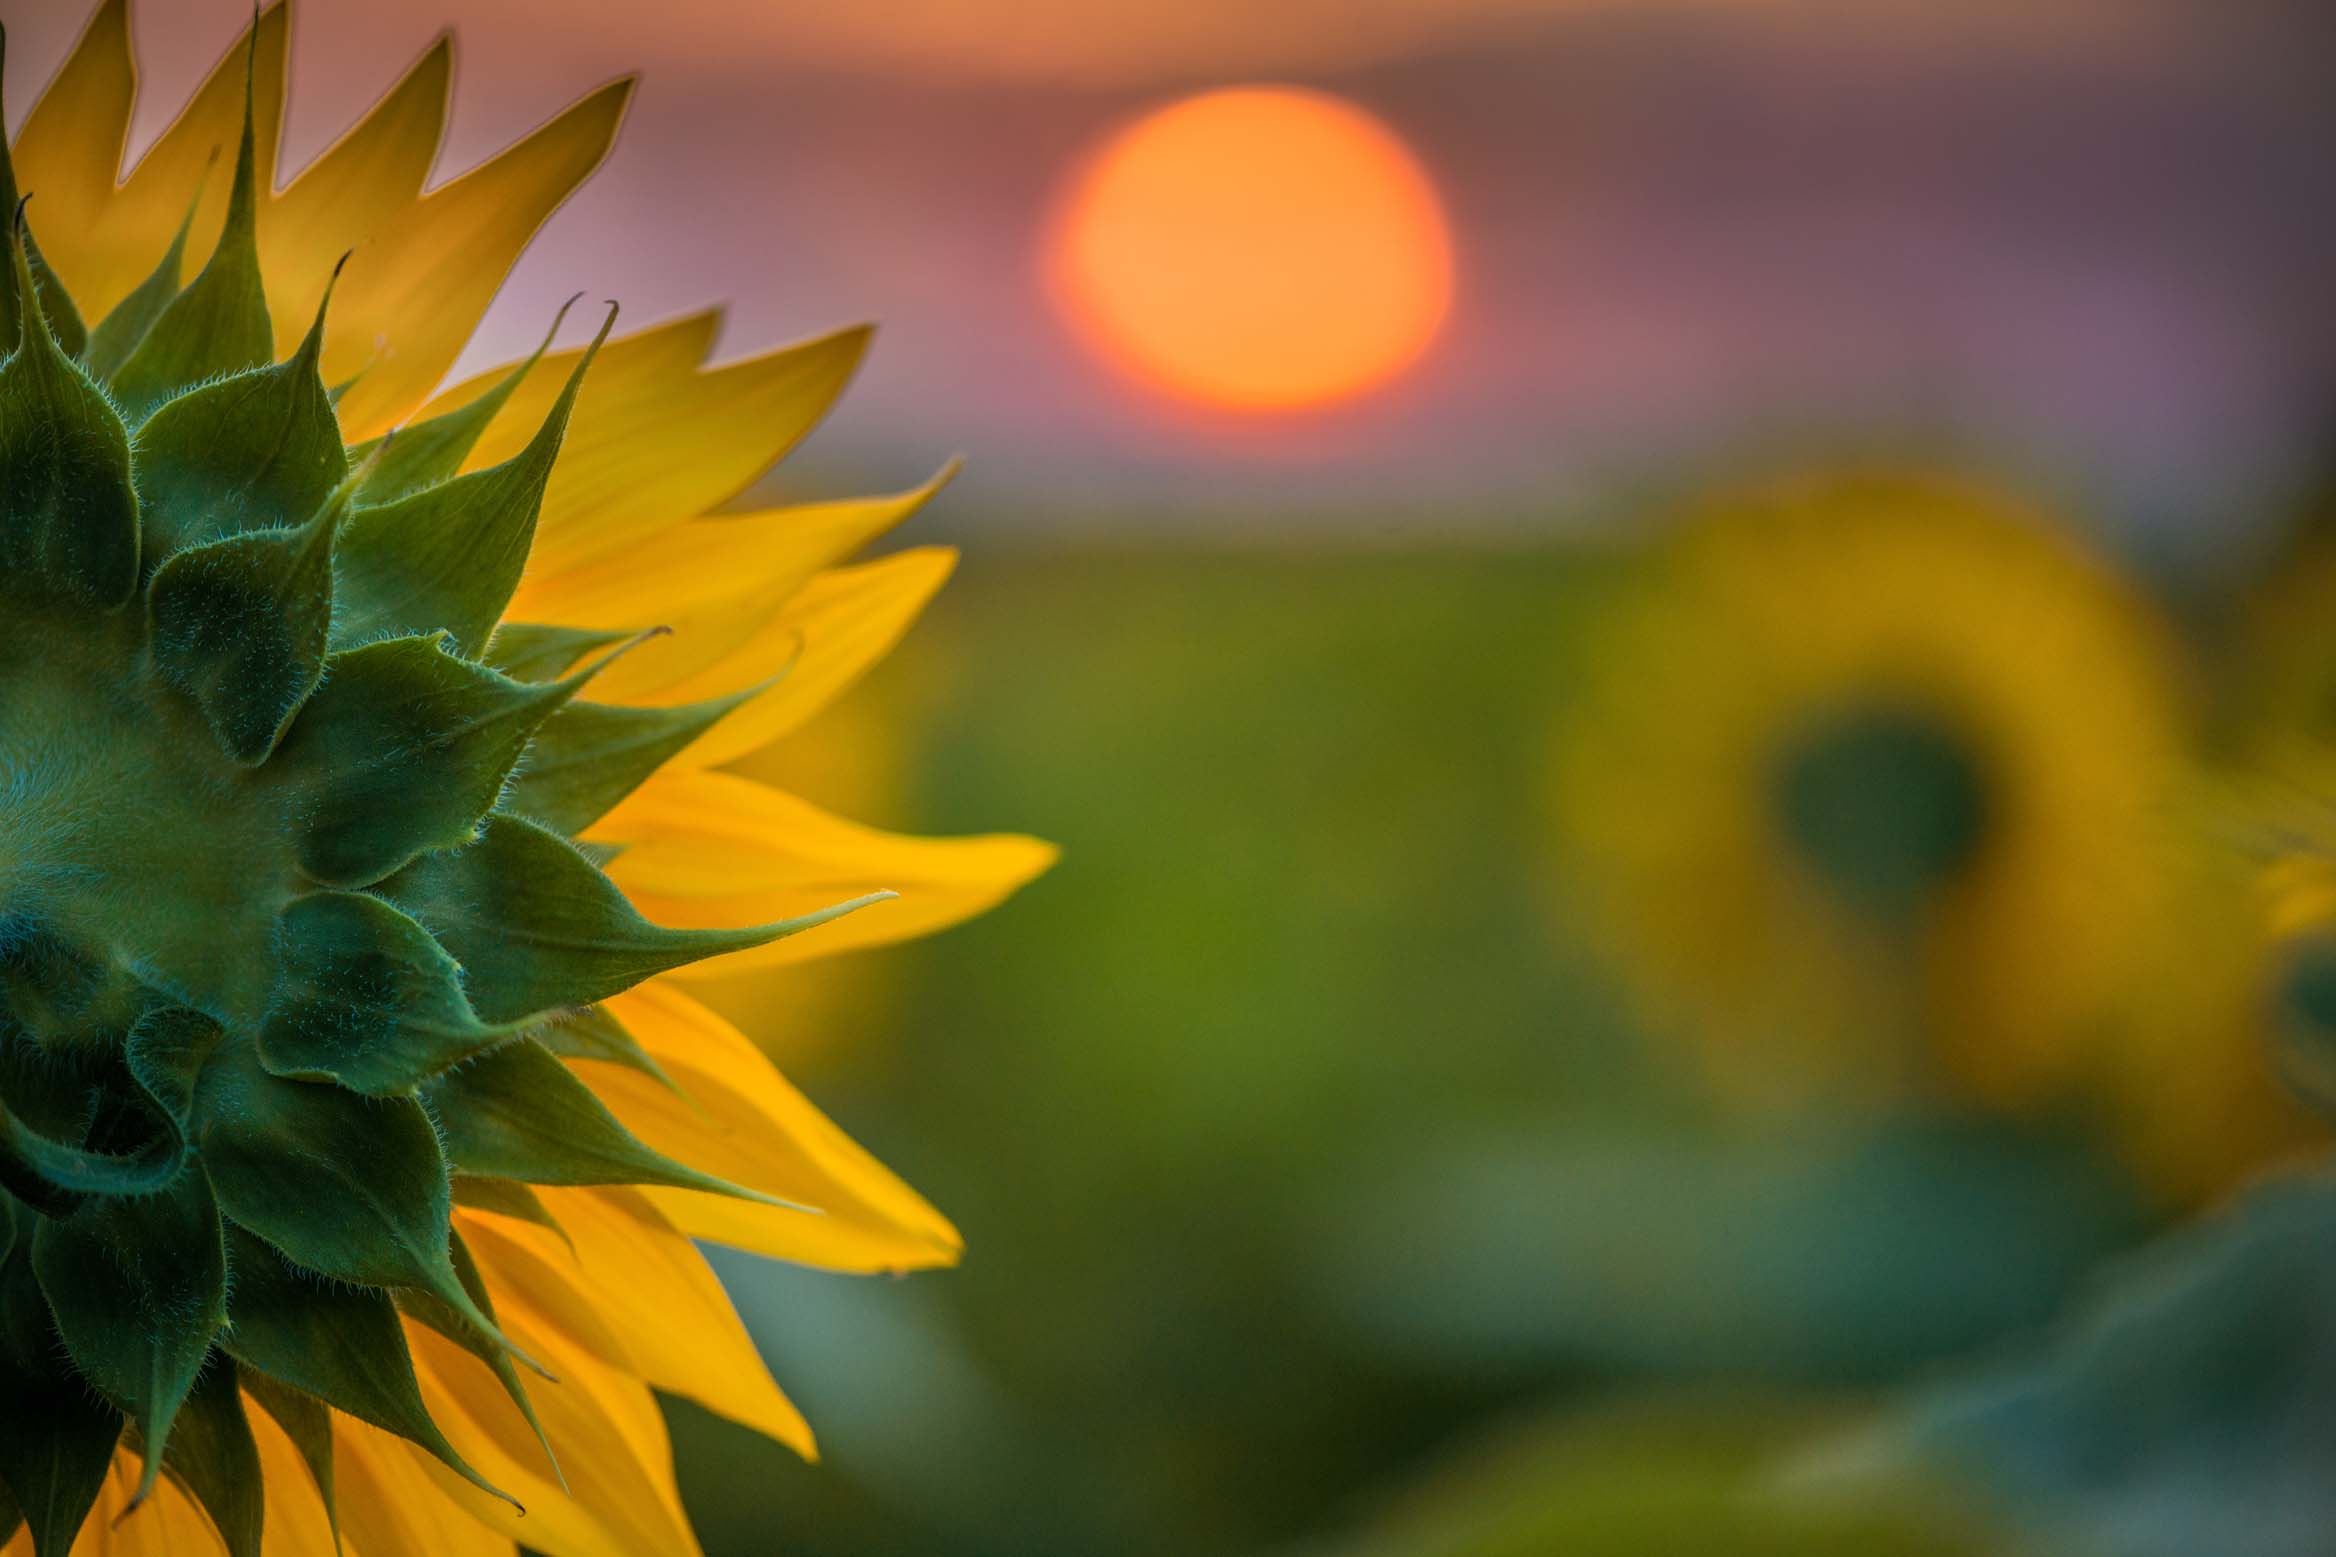 04x06_sunflower-dawn_landscape.jpg